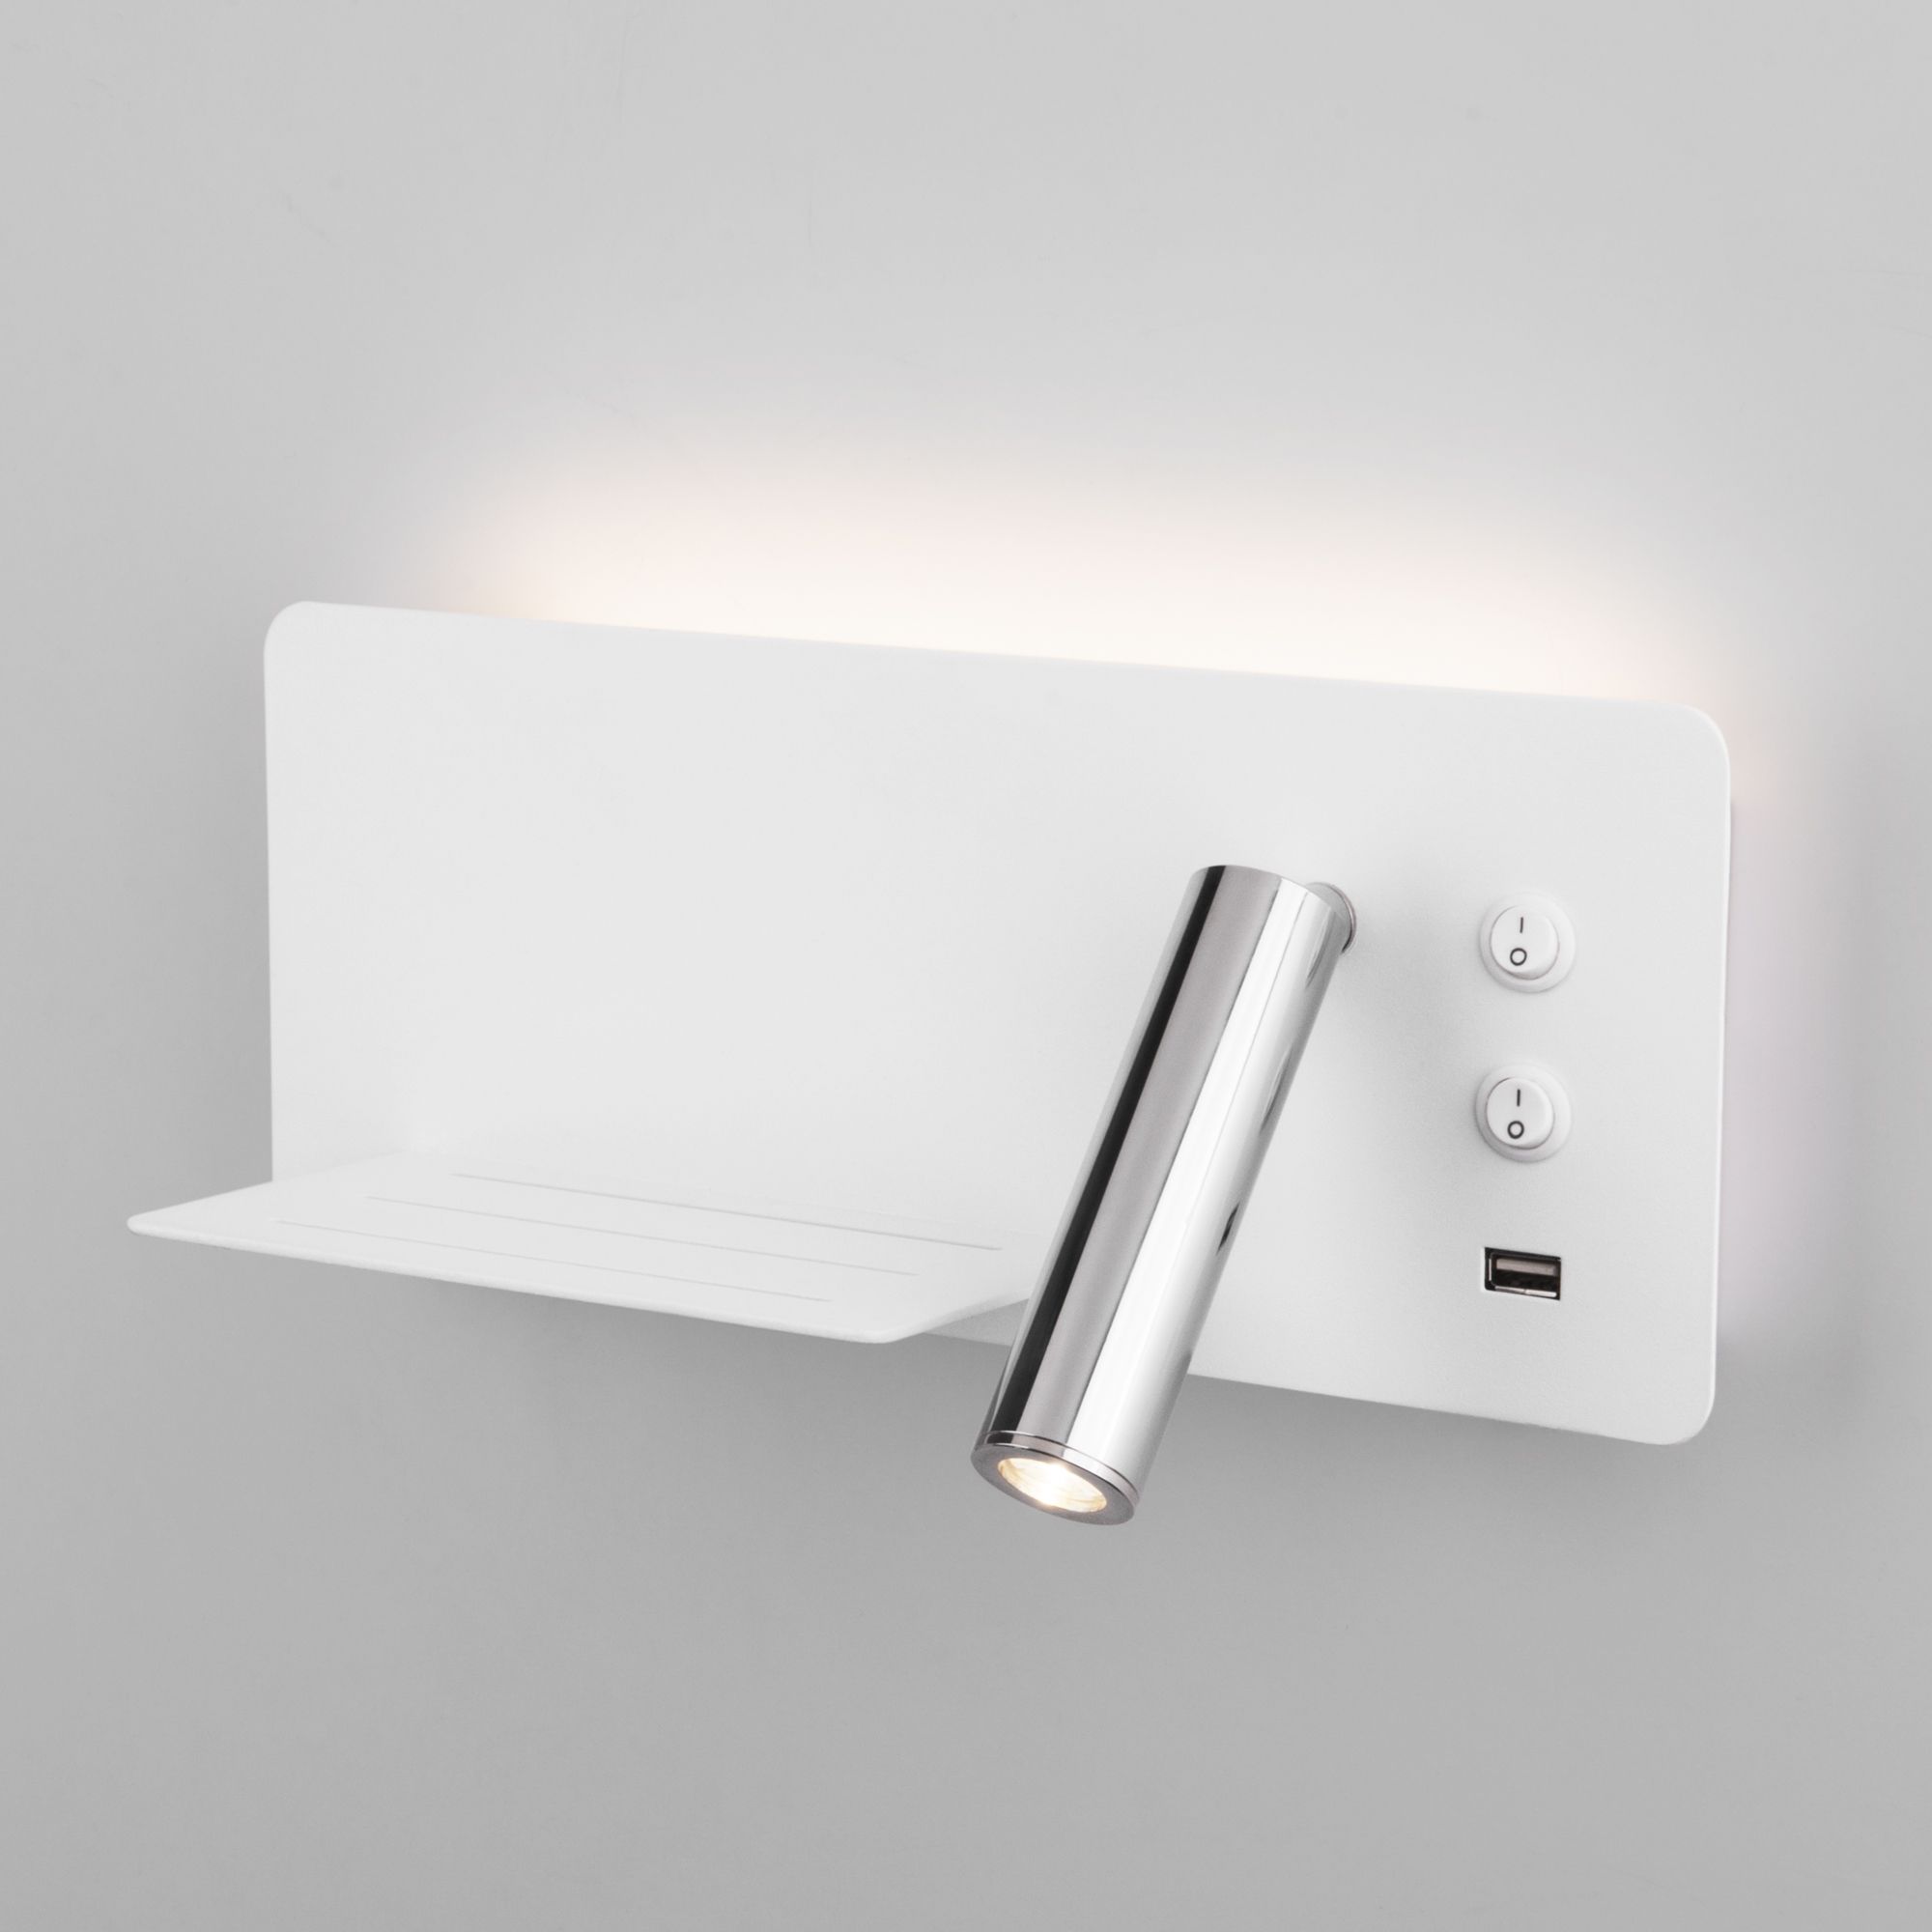 Настенный светодиодный светильник с USB Fant L LED (левый) MRL LED 1113 белый/хром Elektrostandard